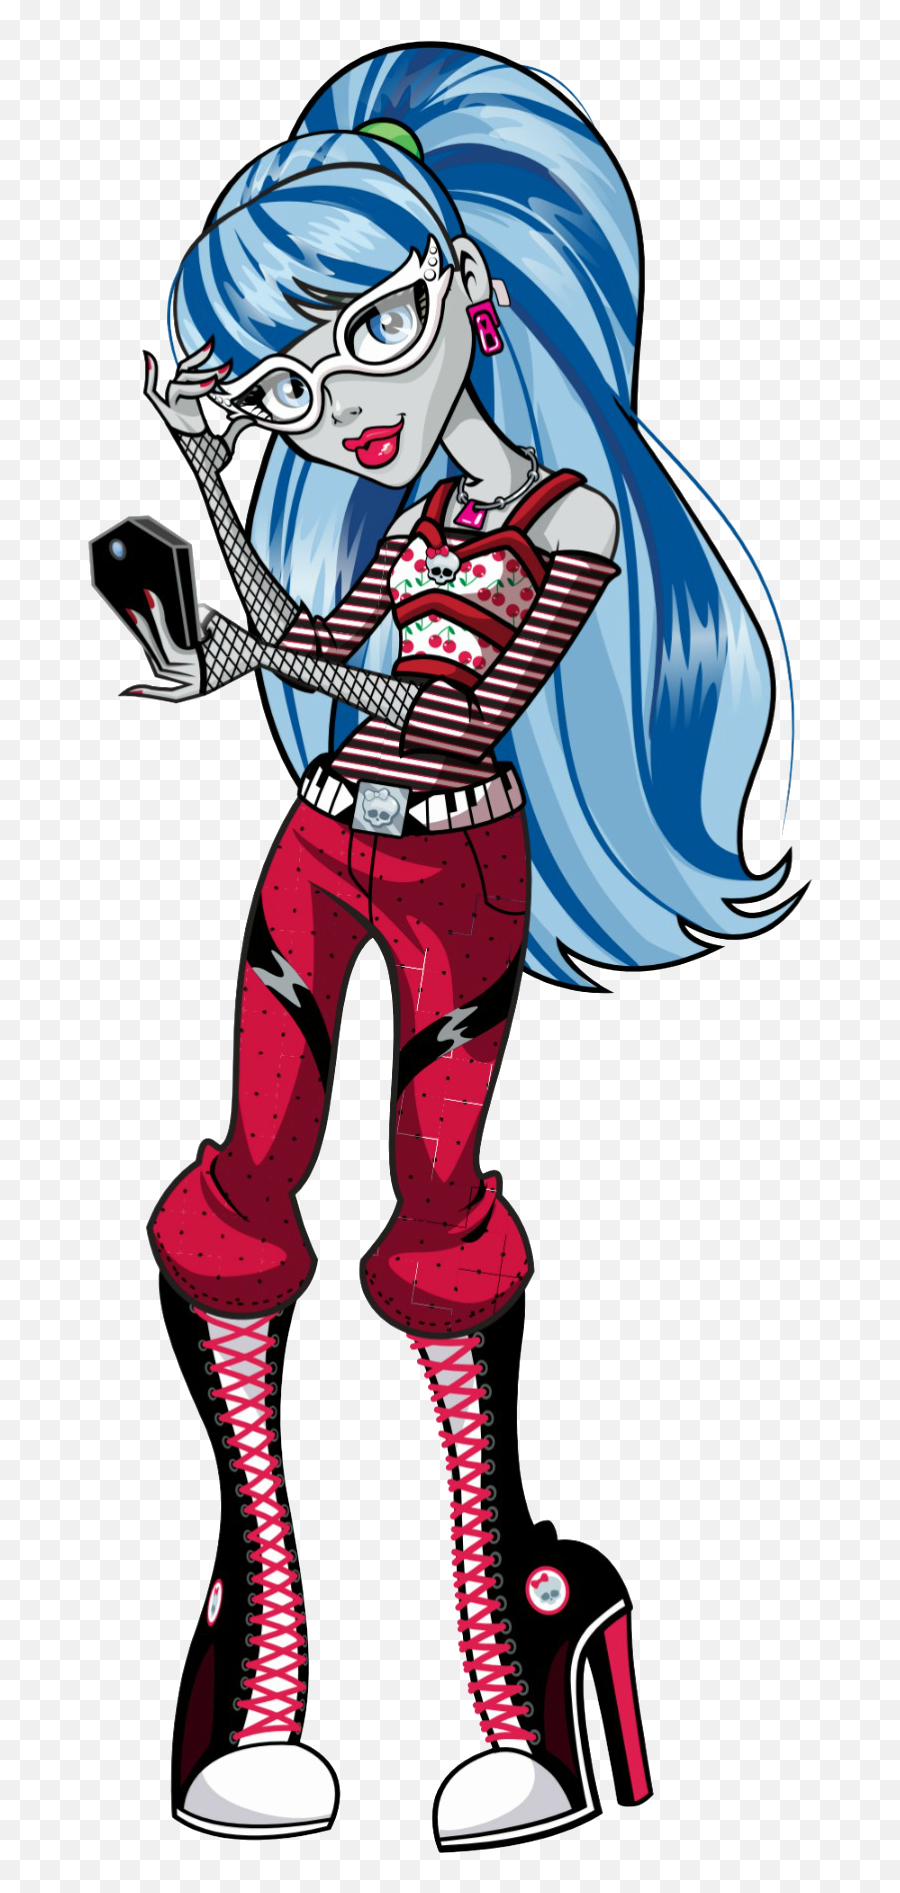 Ghoulia Yelps - Monster High Characters Emoji,Power Ranger Emoji